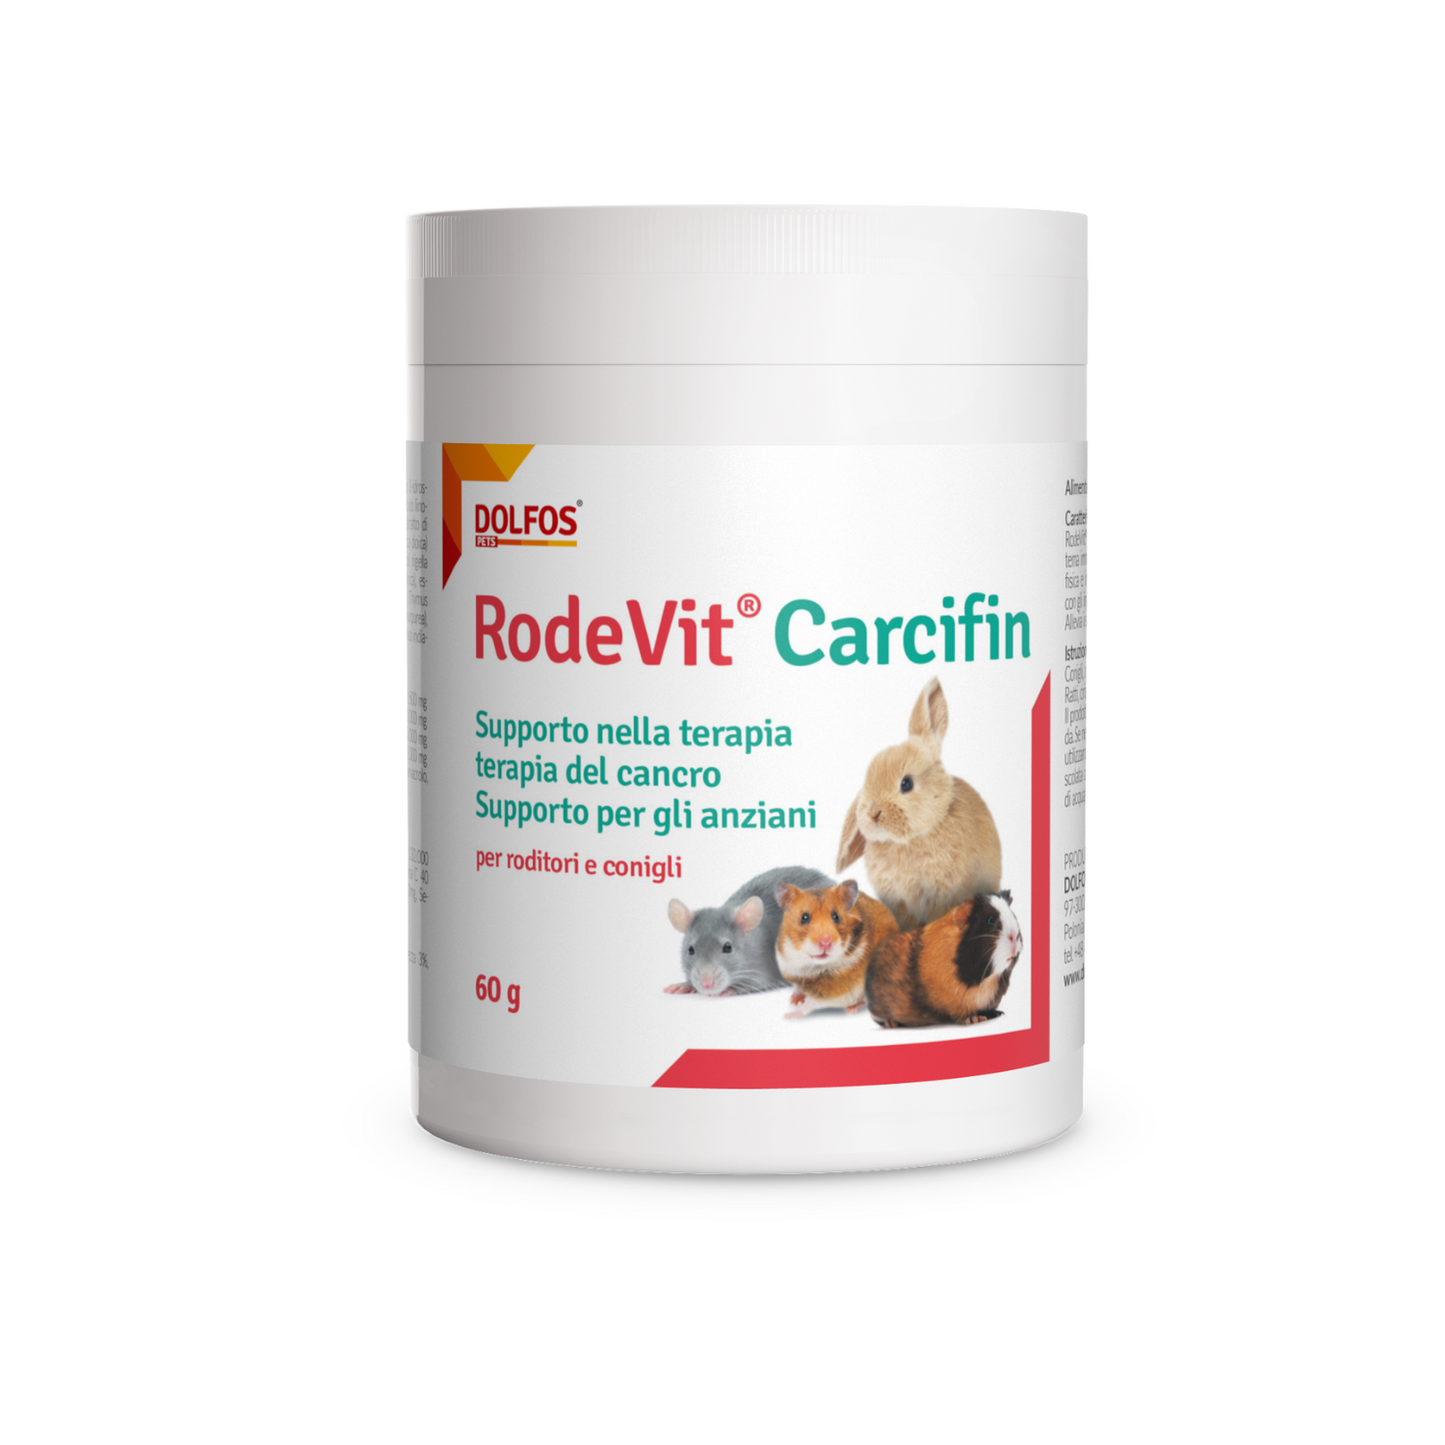 RodeVit Carcifin " .. supporto alla terapia contro il cancro, supporto per anziani.."